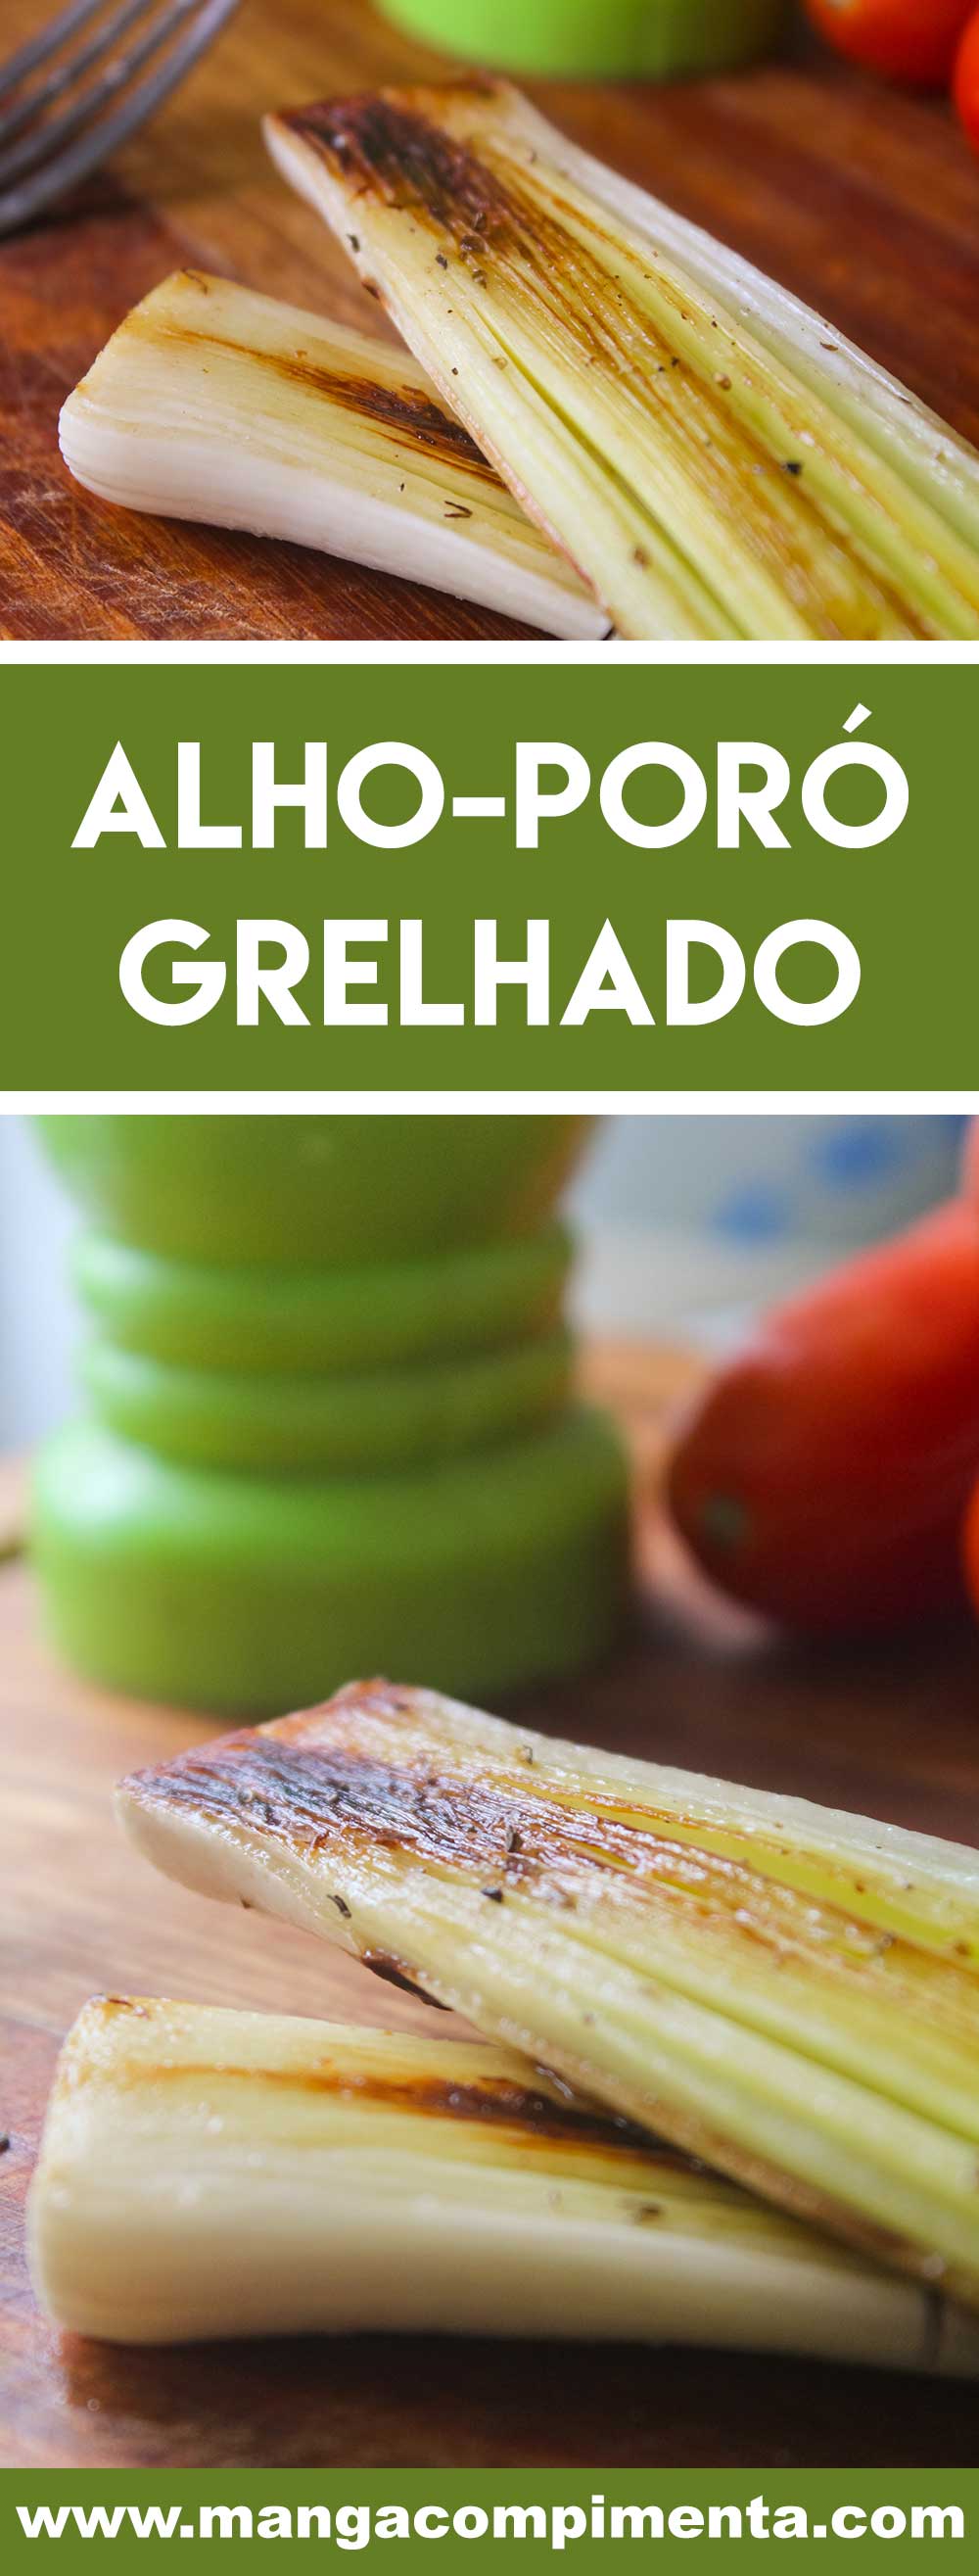 Receita de Alho-poró Grelhado - super simples de fazer, combina com aquele frango grelhado do almoço da semana!